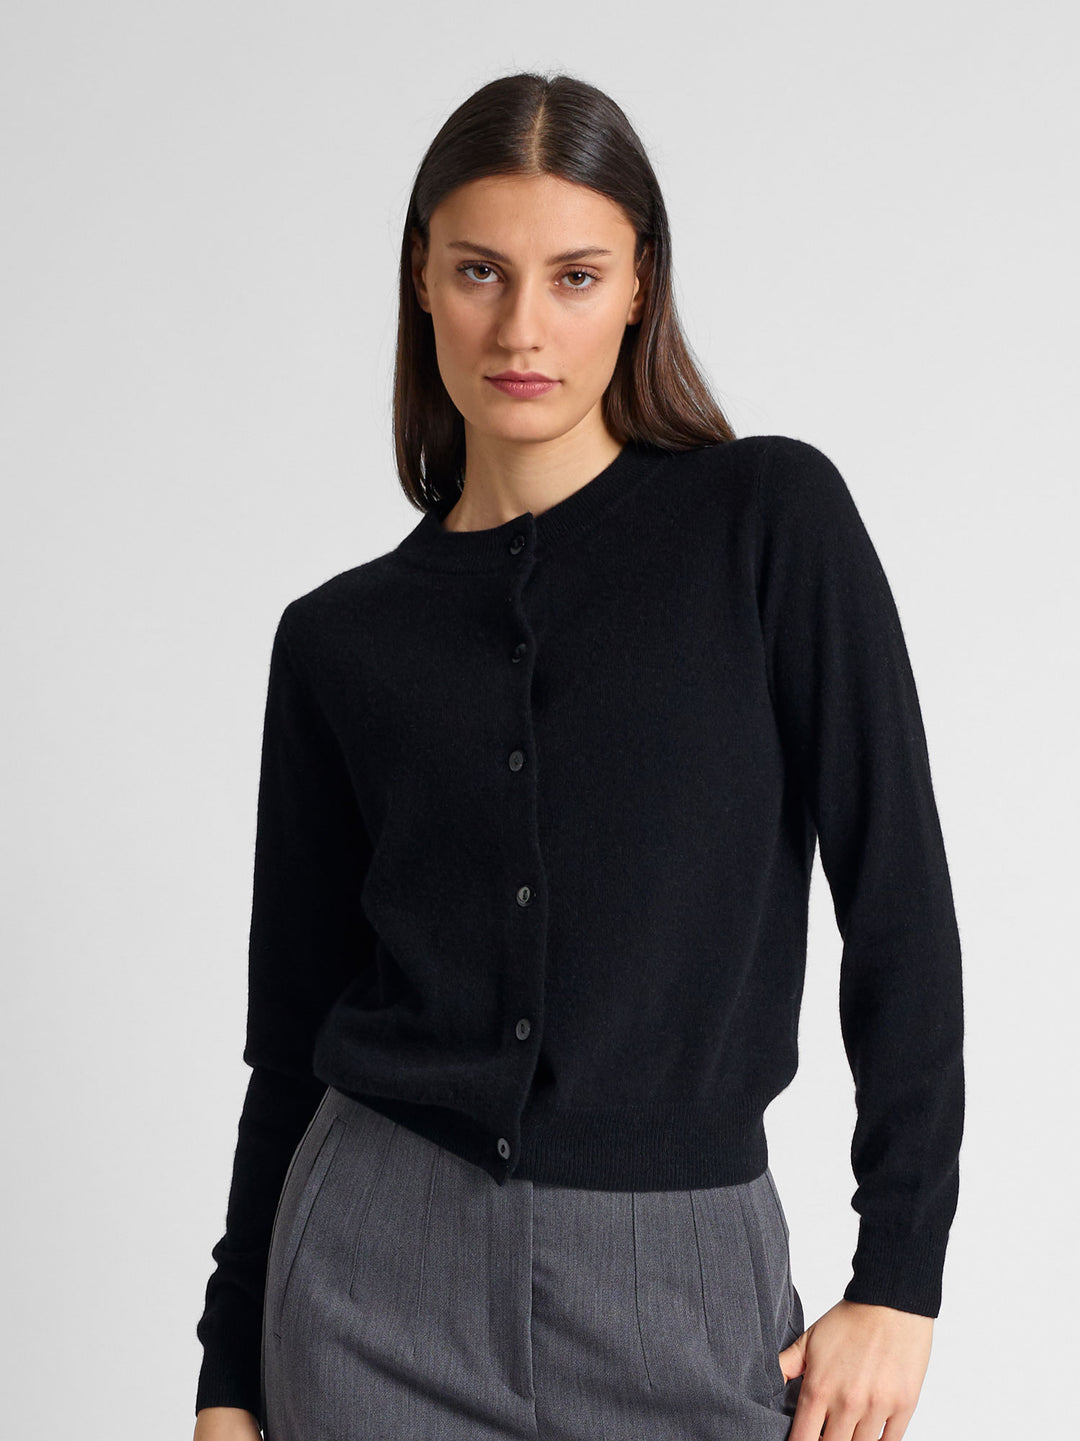 Cashmere cardigan "Ingrid" in 100% pure cashmere. Scandinavian design by Kashmina. Color: Black.,